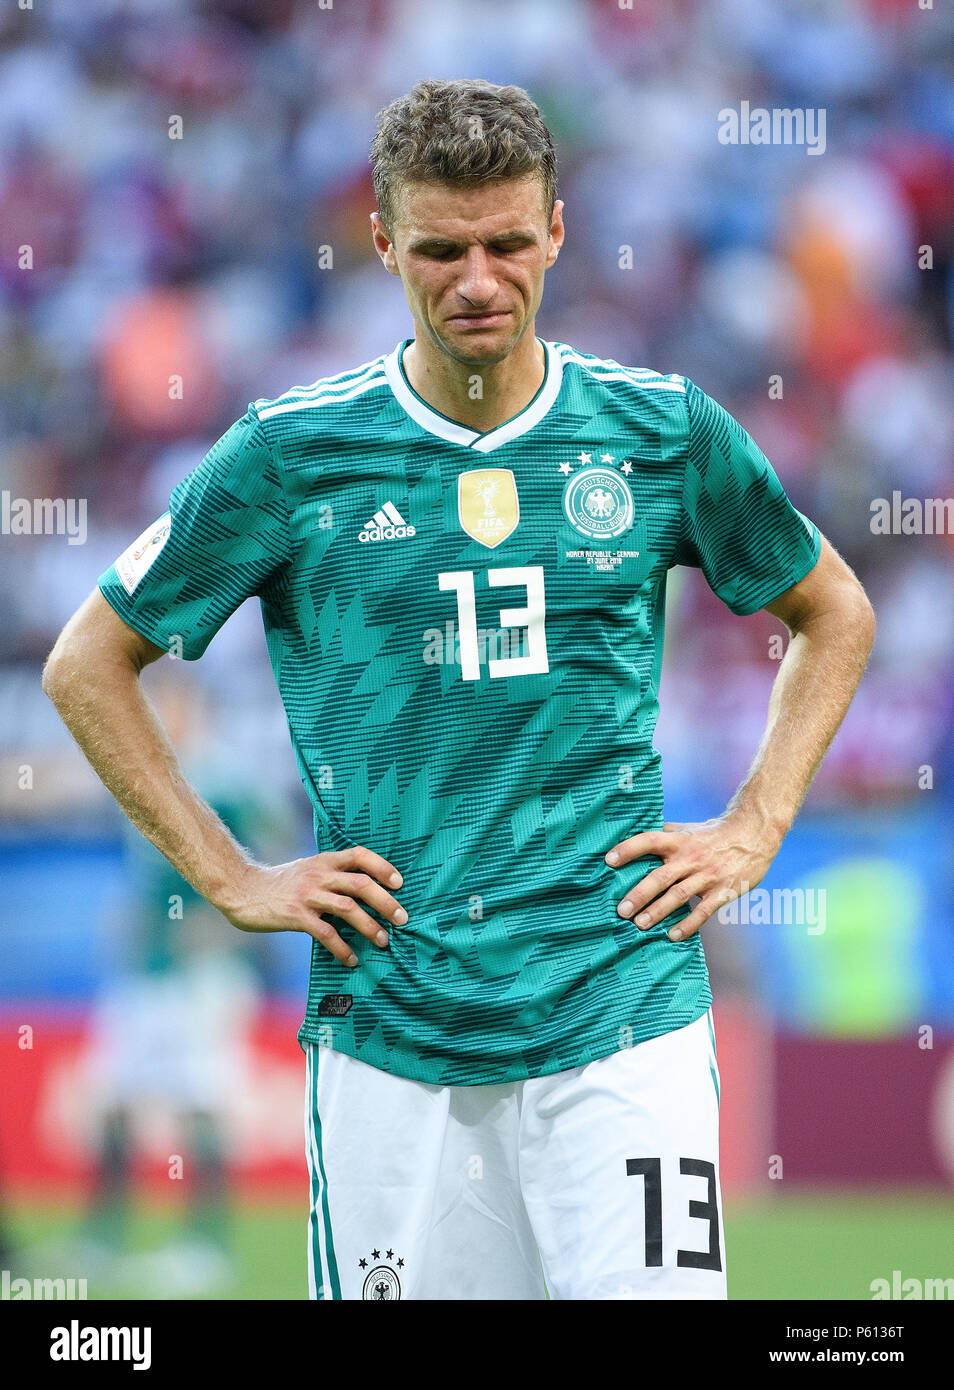 Kazan, Rusia. 27 de junio de 2018. frustrado tras la finalización del juego: Thomas Müller está llorando. GES/Fútbol/Copa Mundial 2018 Rusia: Alemania, Corea del Sur - 27.06.2018 Rusia: la